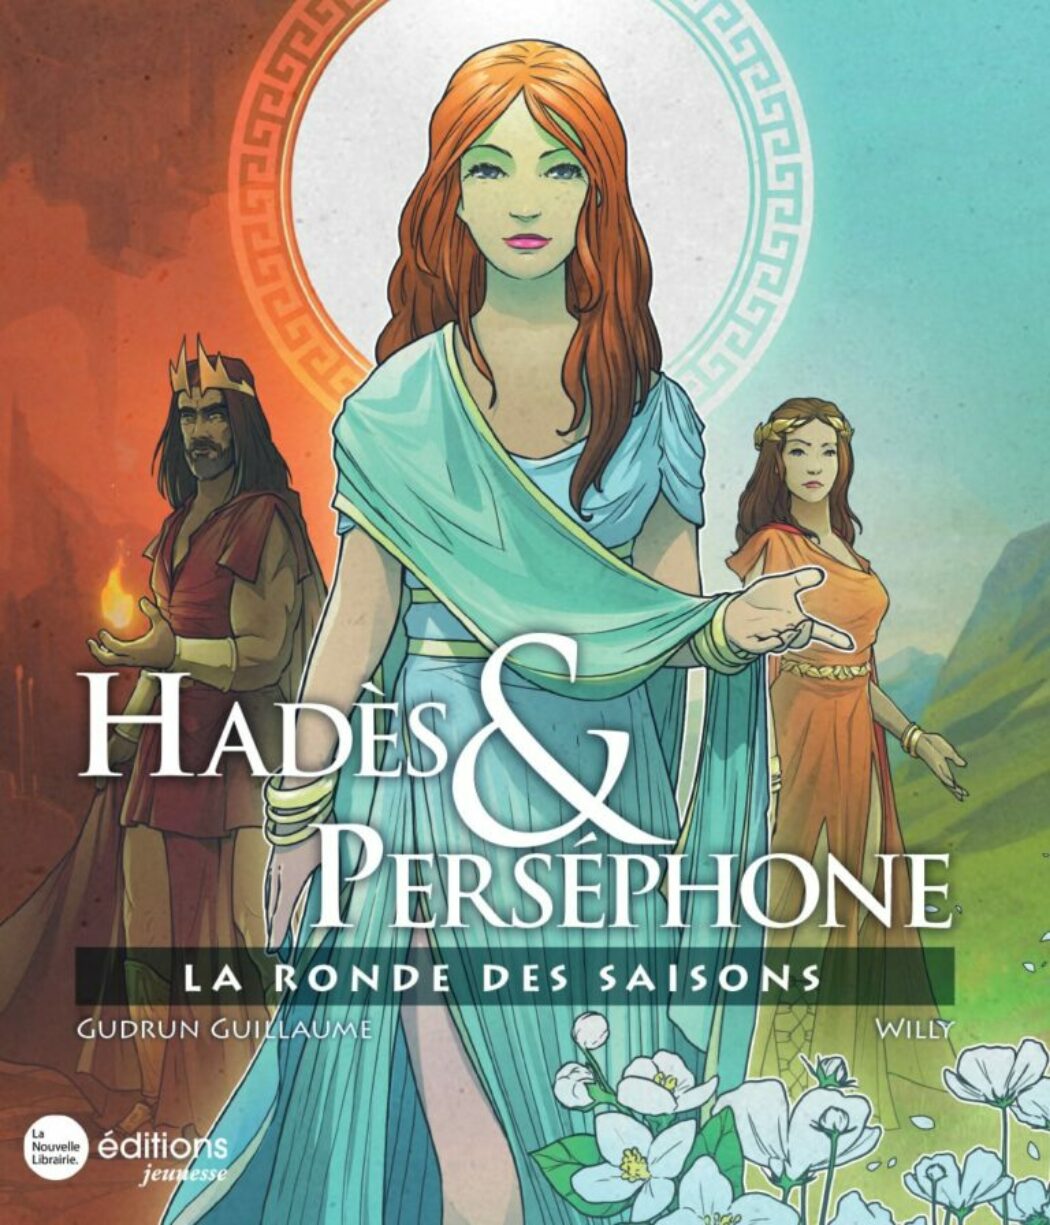 Connaissez-vous Hadès et Perséphone ?